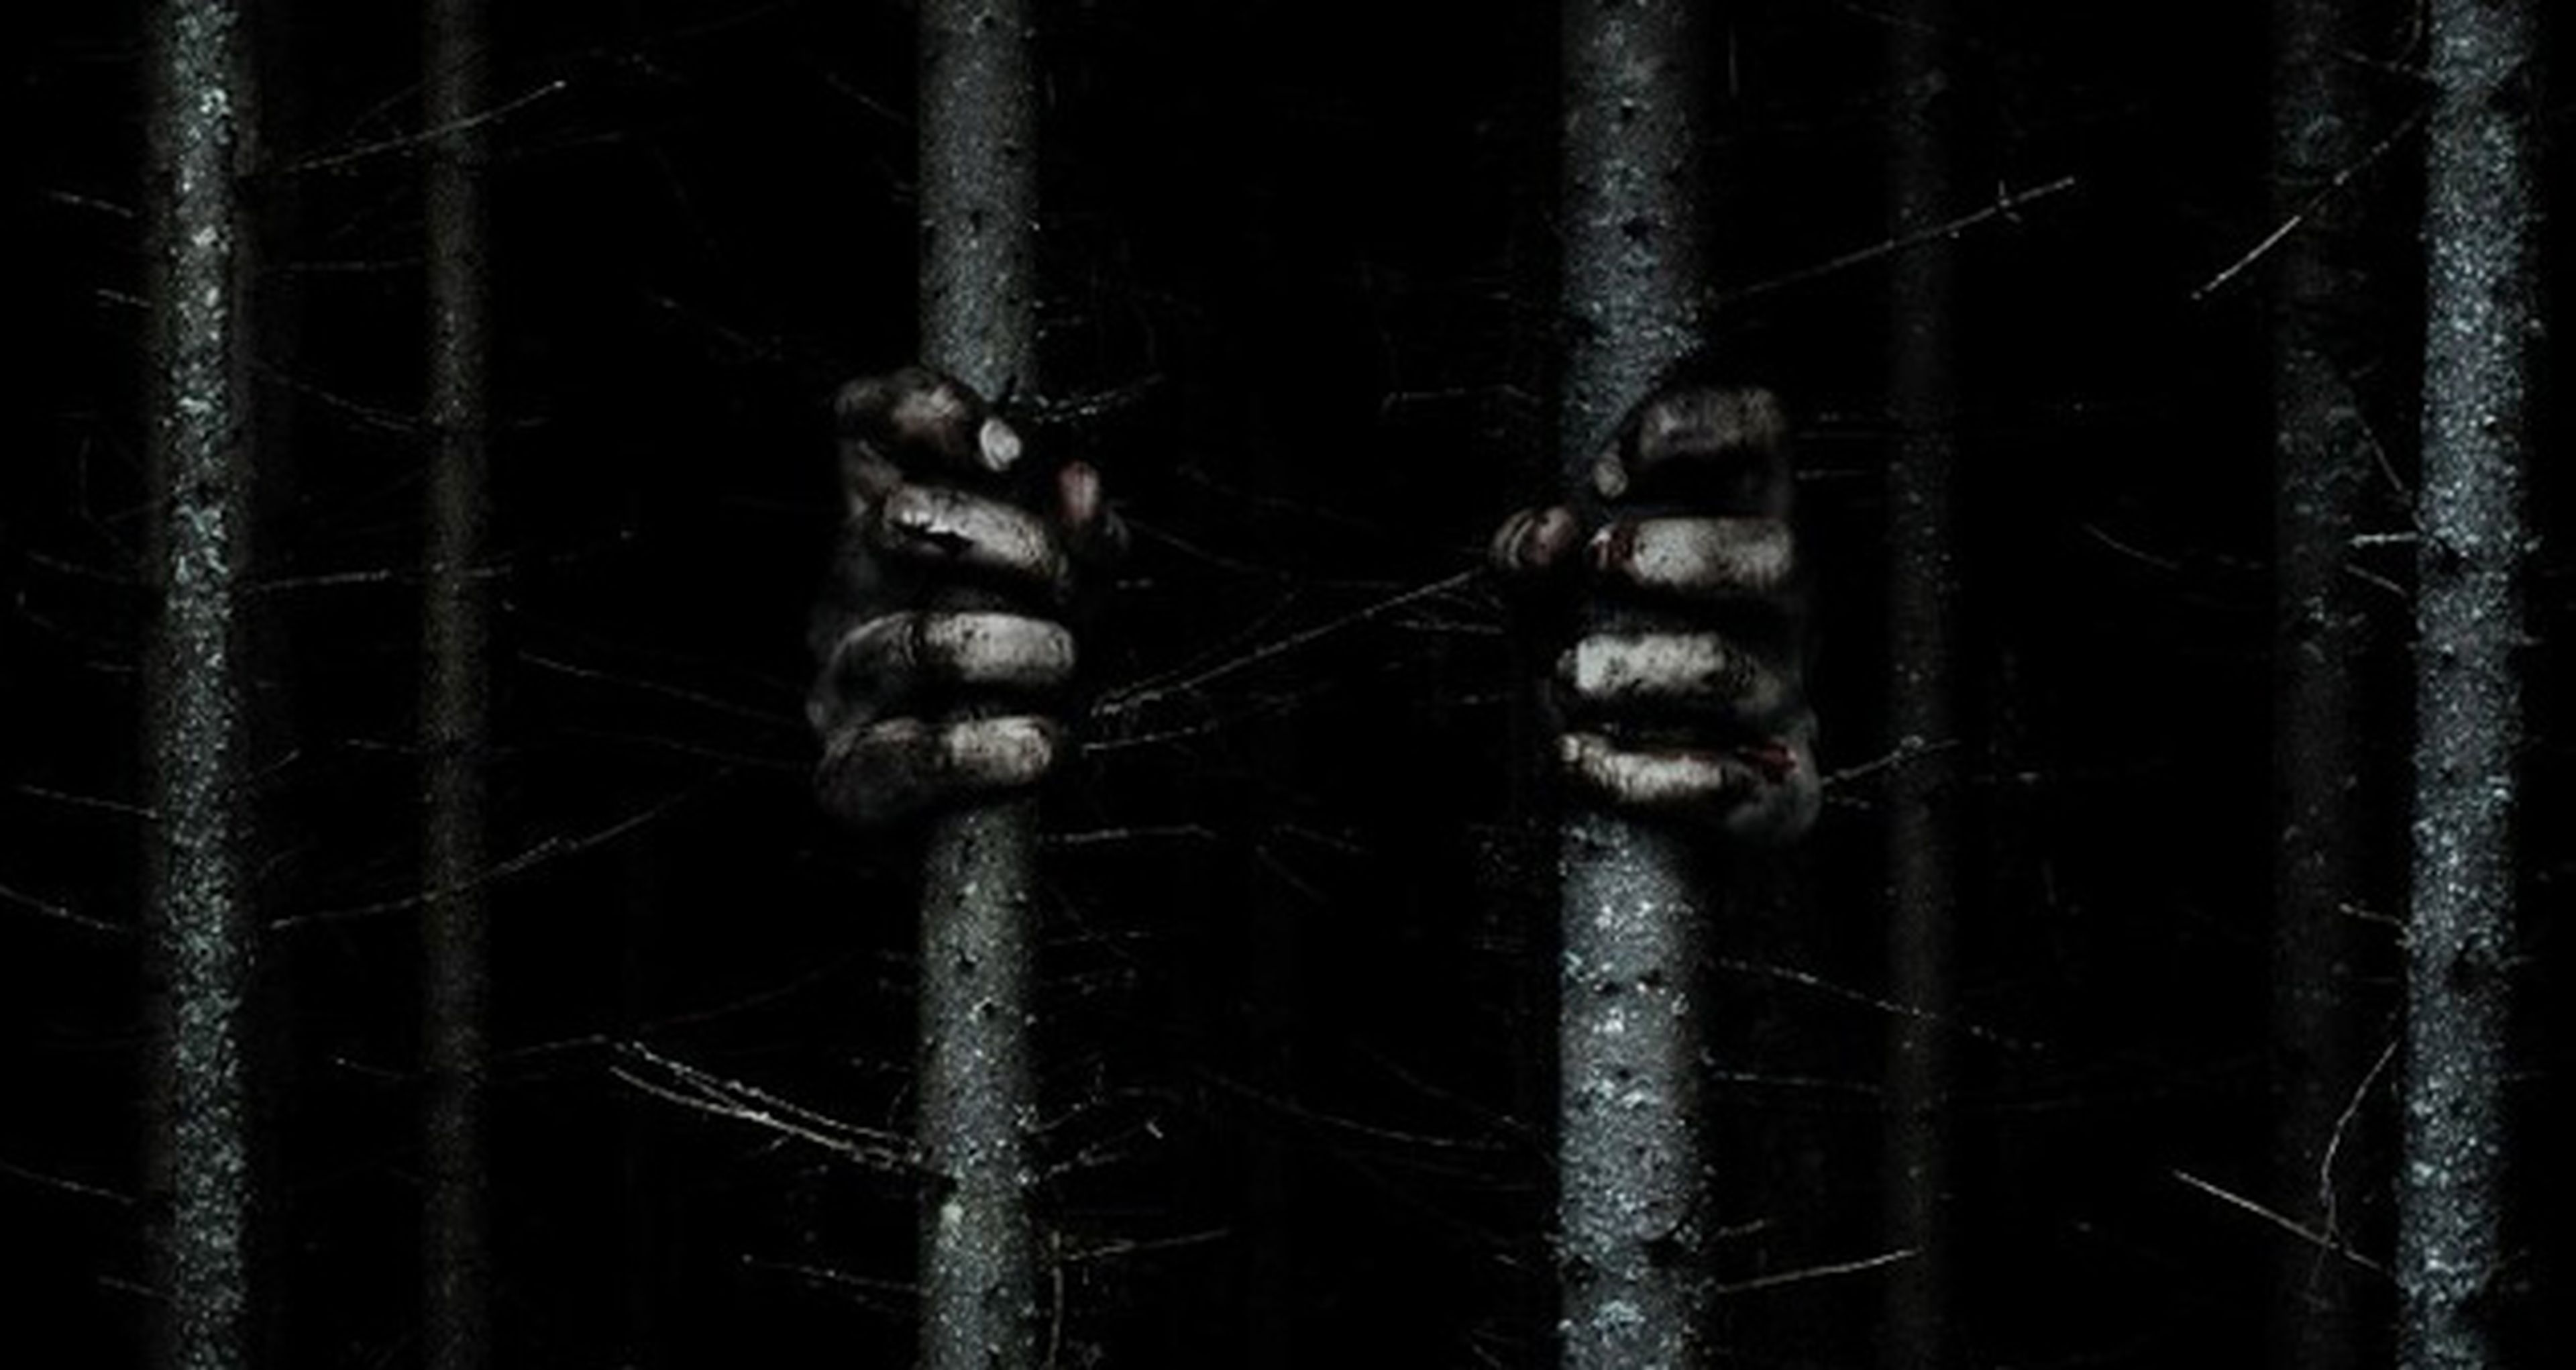 The Woods – Tráiler y póster de la película de terror de Adam Wingard